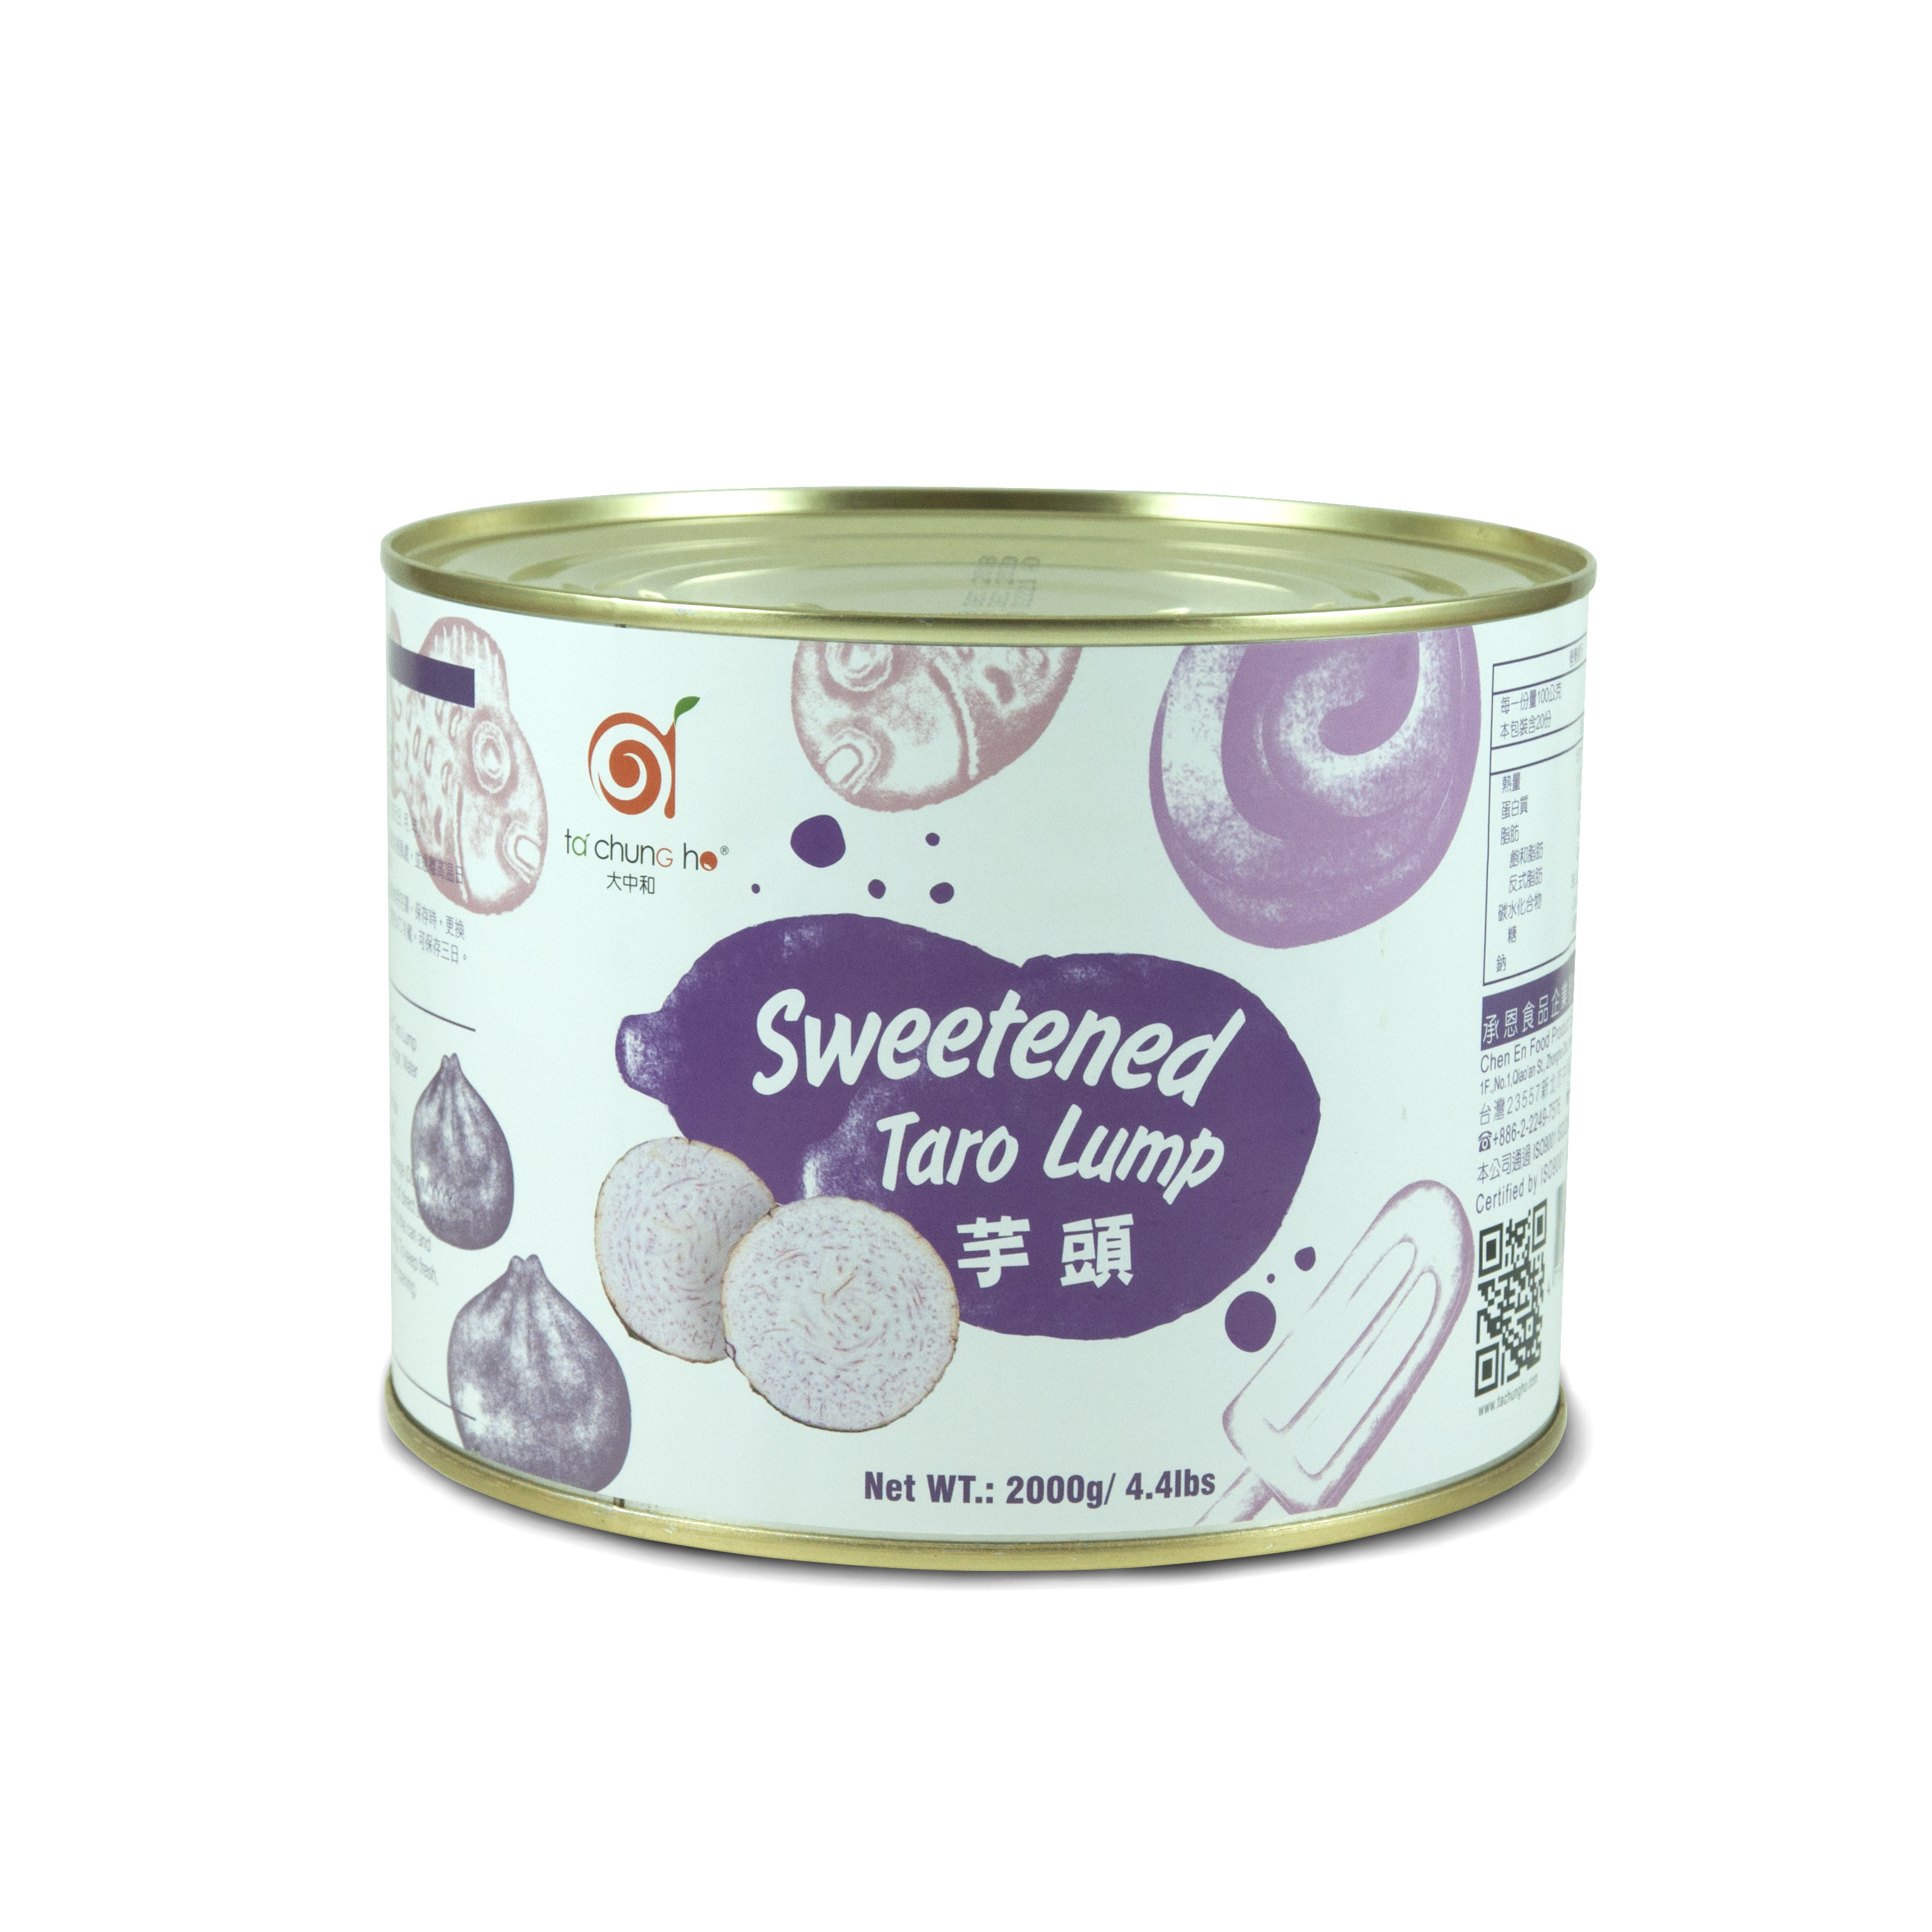 Sweetened Taro Lump Package